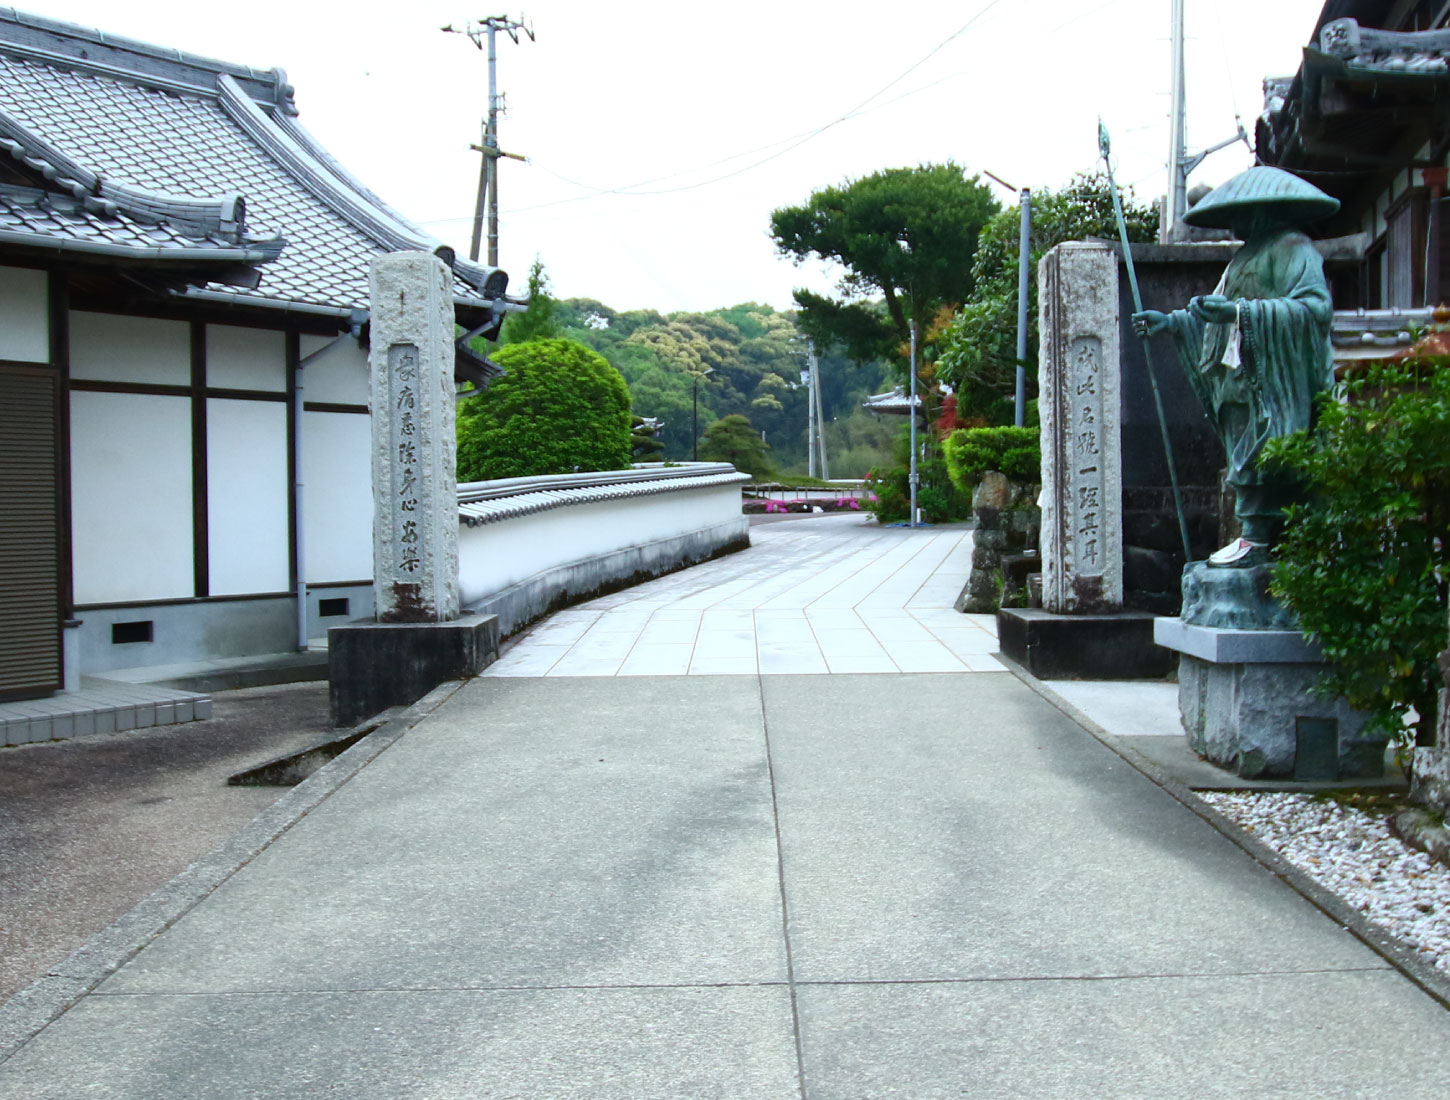 Motoyama Suzakuin Tangenji Temple